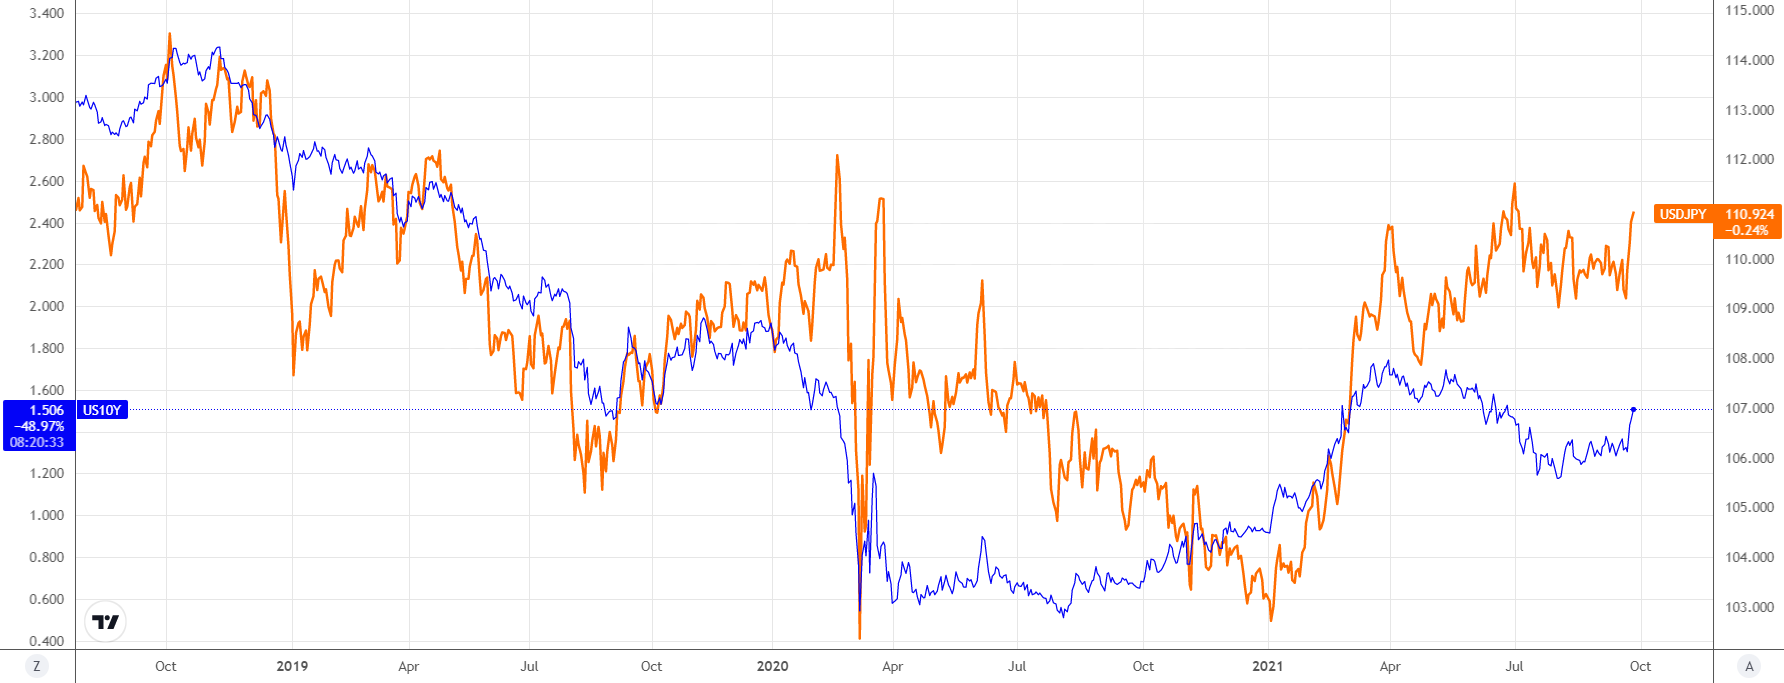 US_yields_vs_USDJPY_SEPT_21.png